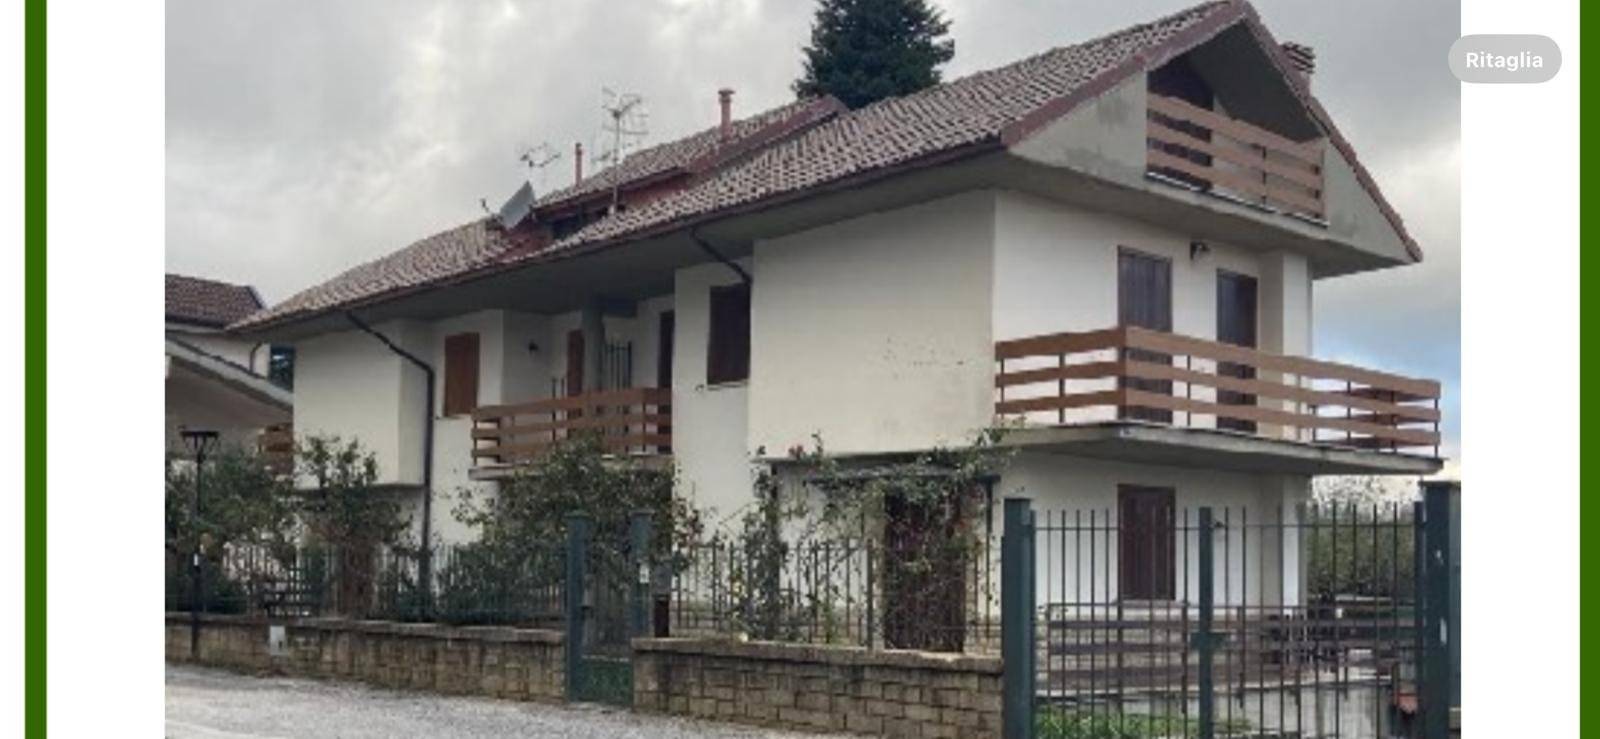 Case in vendita Leonessa - Immobiliare.it